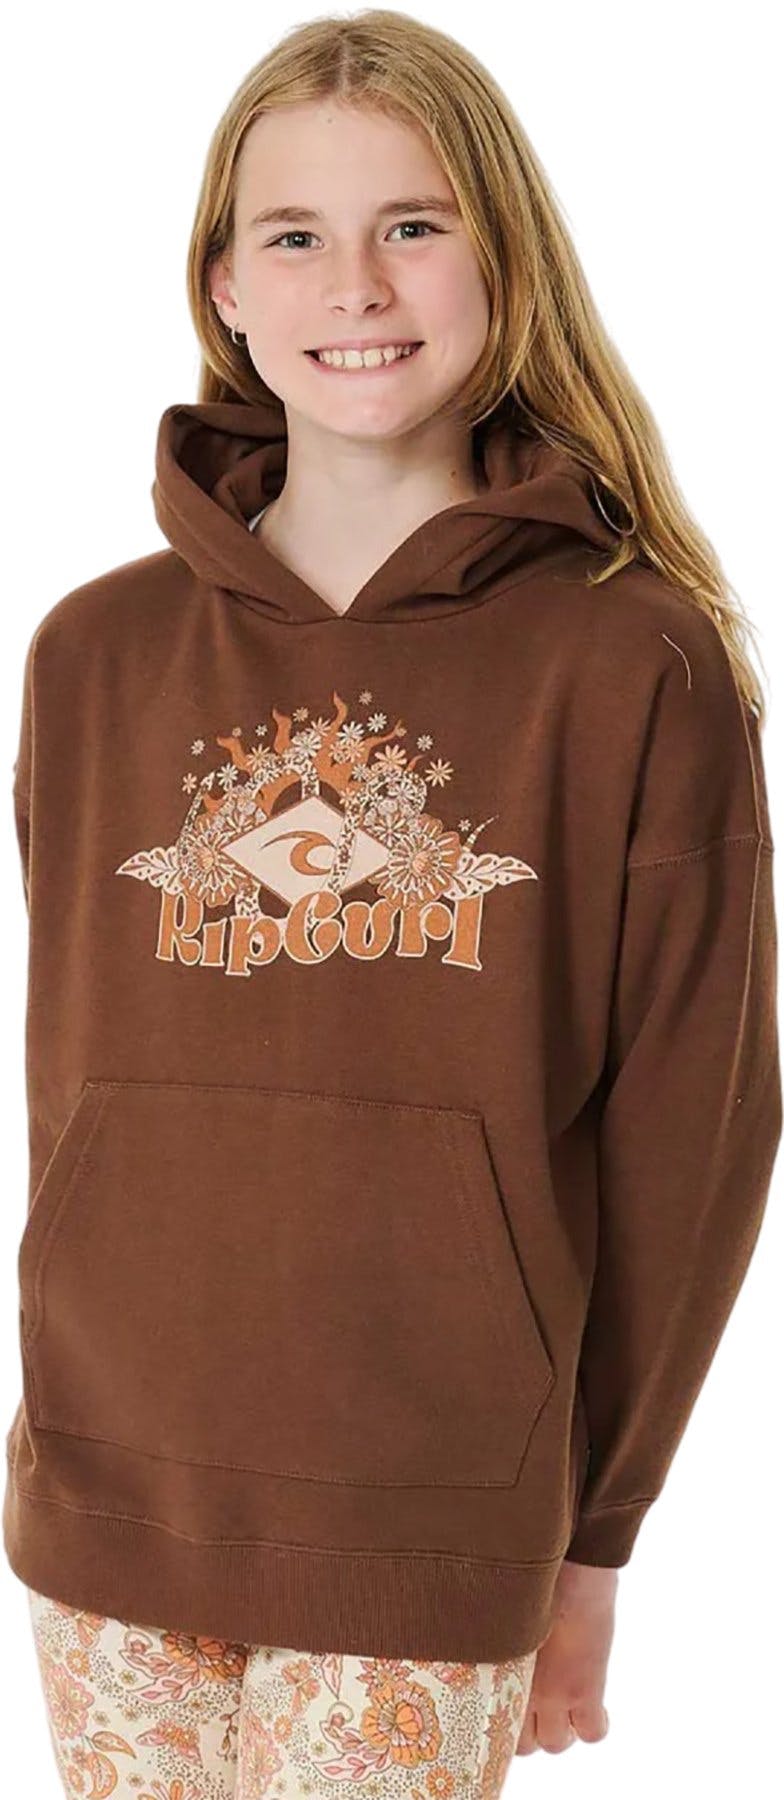 Product image for Sun Catcher Hooded Fleece Sweatshirt - Girls